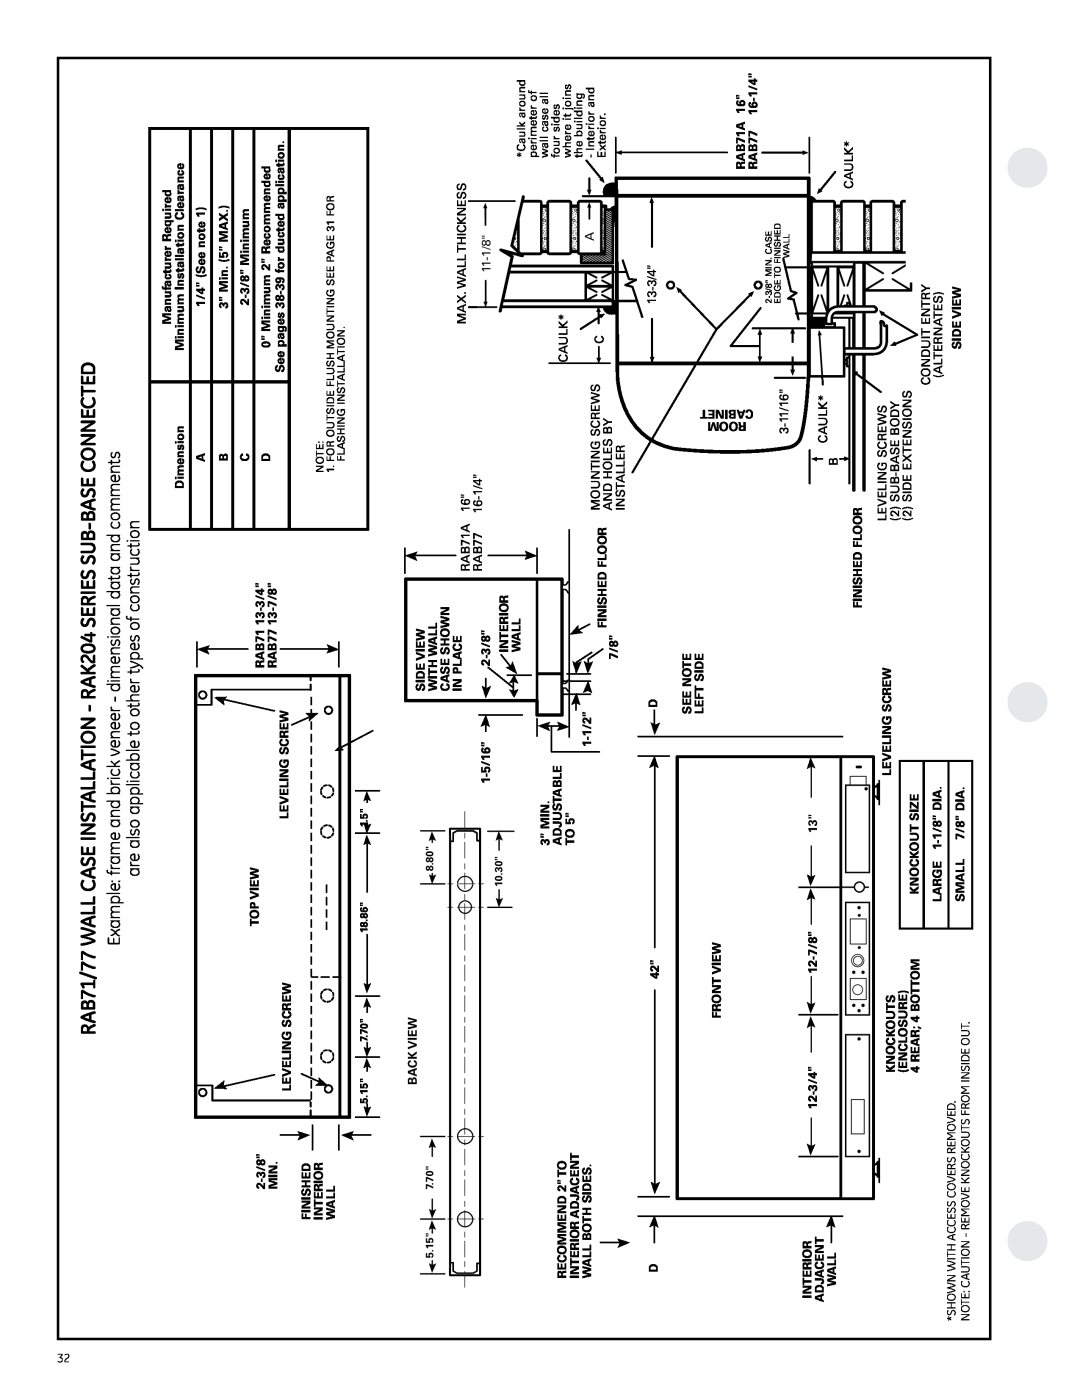 GE 6100, 4100 manual 1/4 See note 